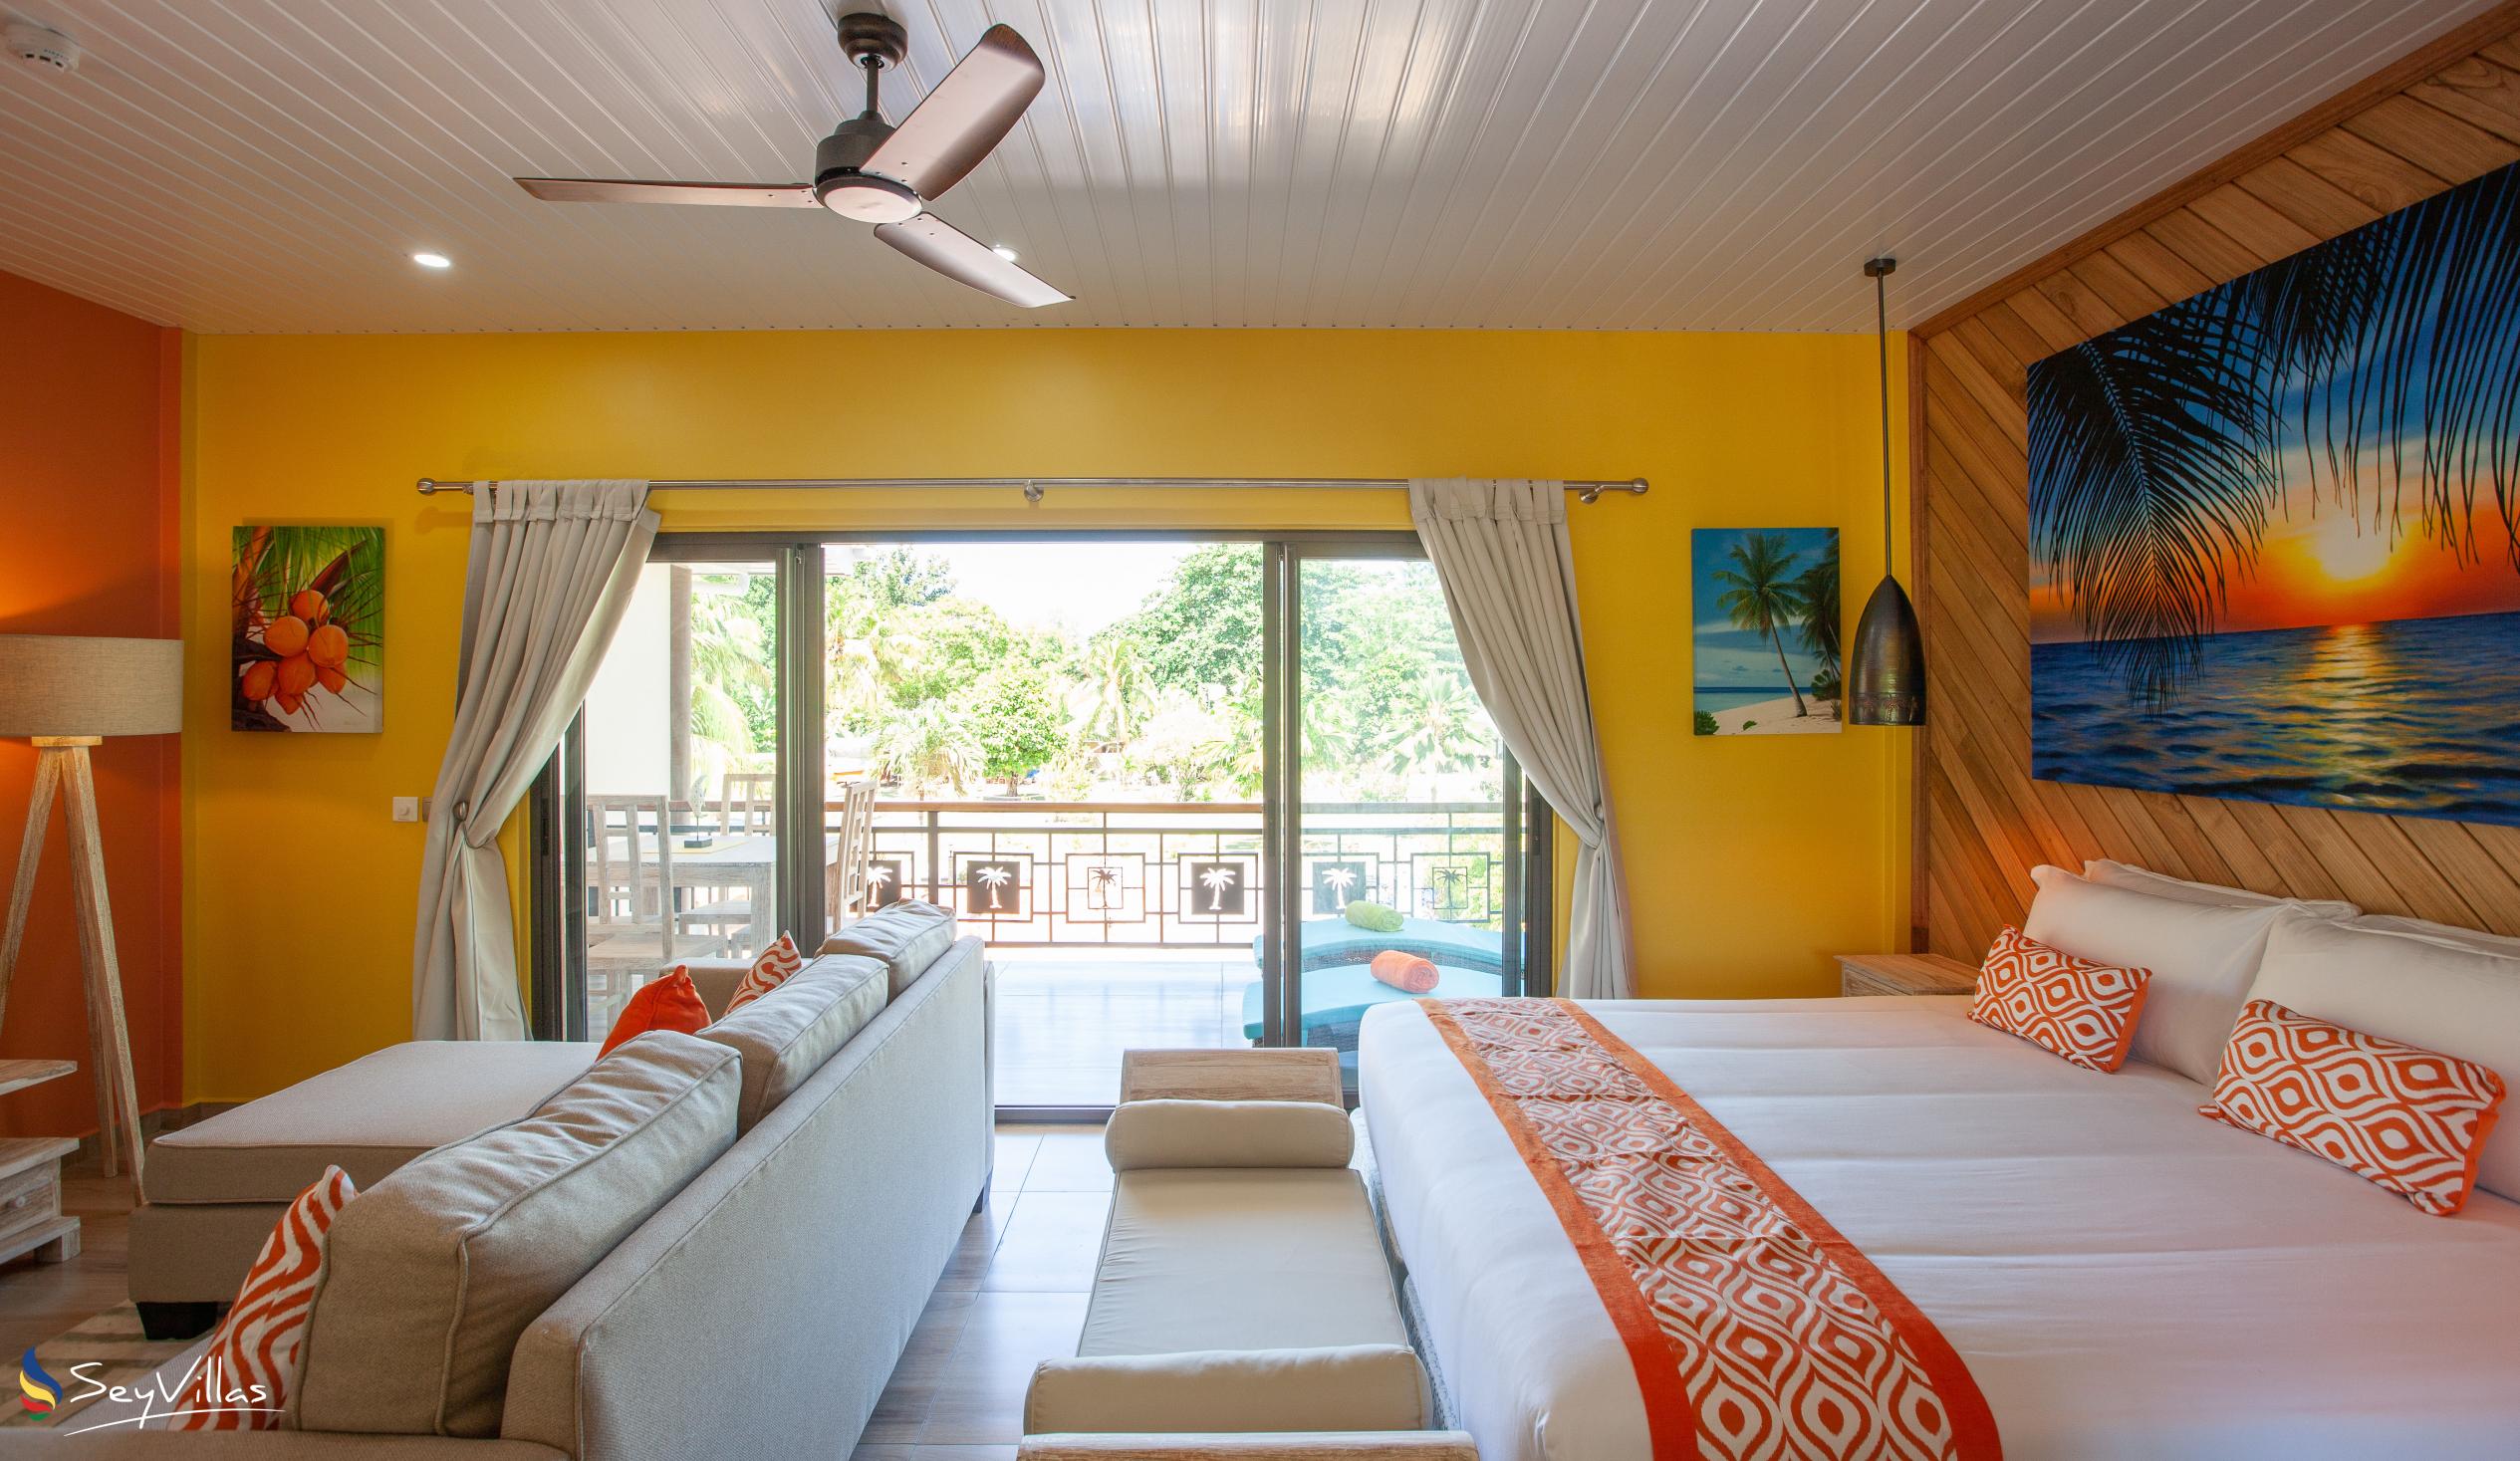 Photo 123: Casa de Leela - Deluxe Apartment - La Digue (Seychelles)